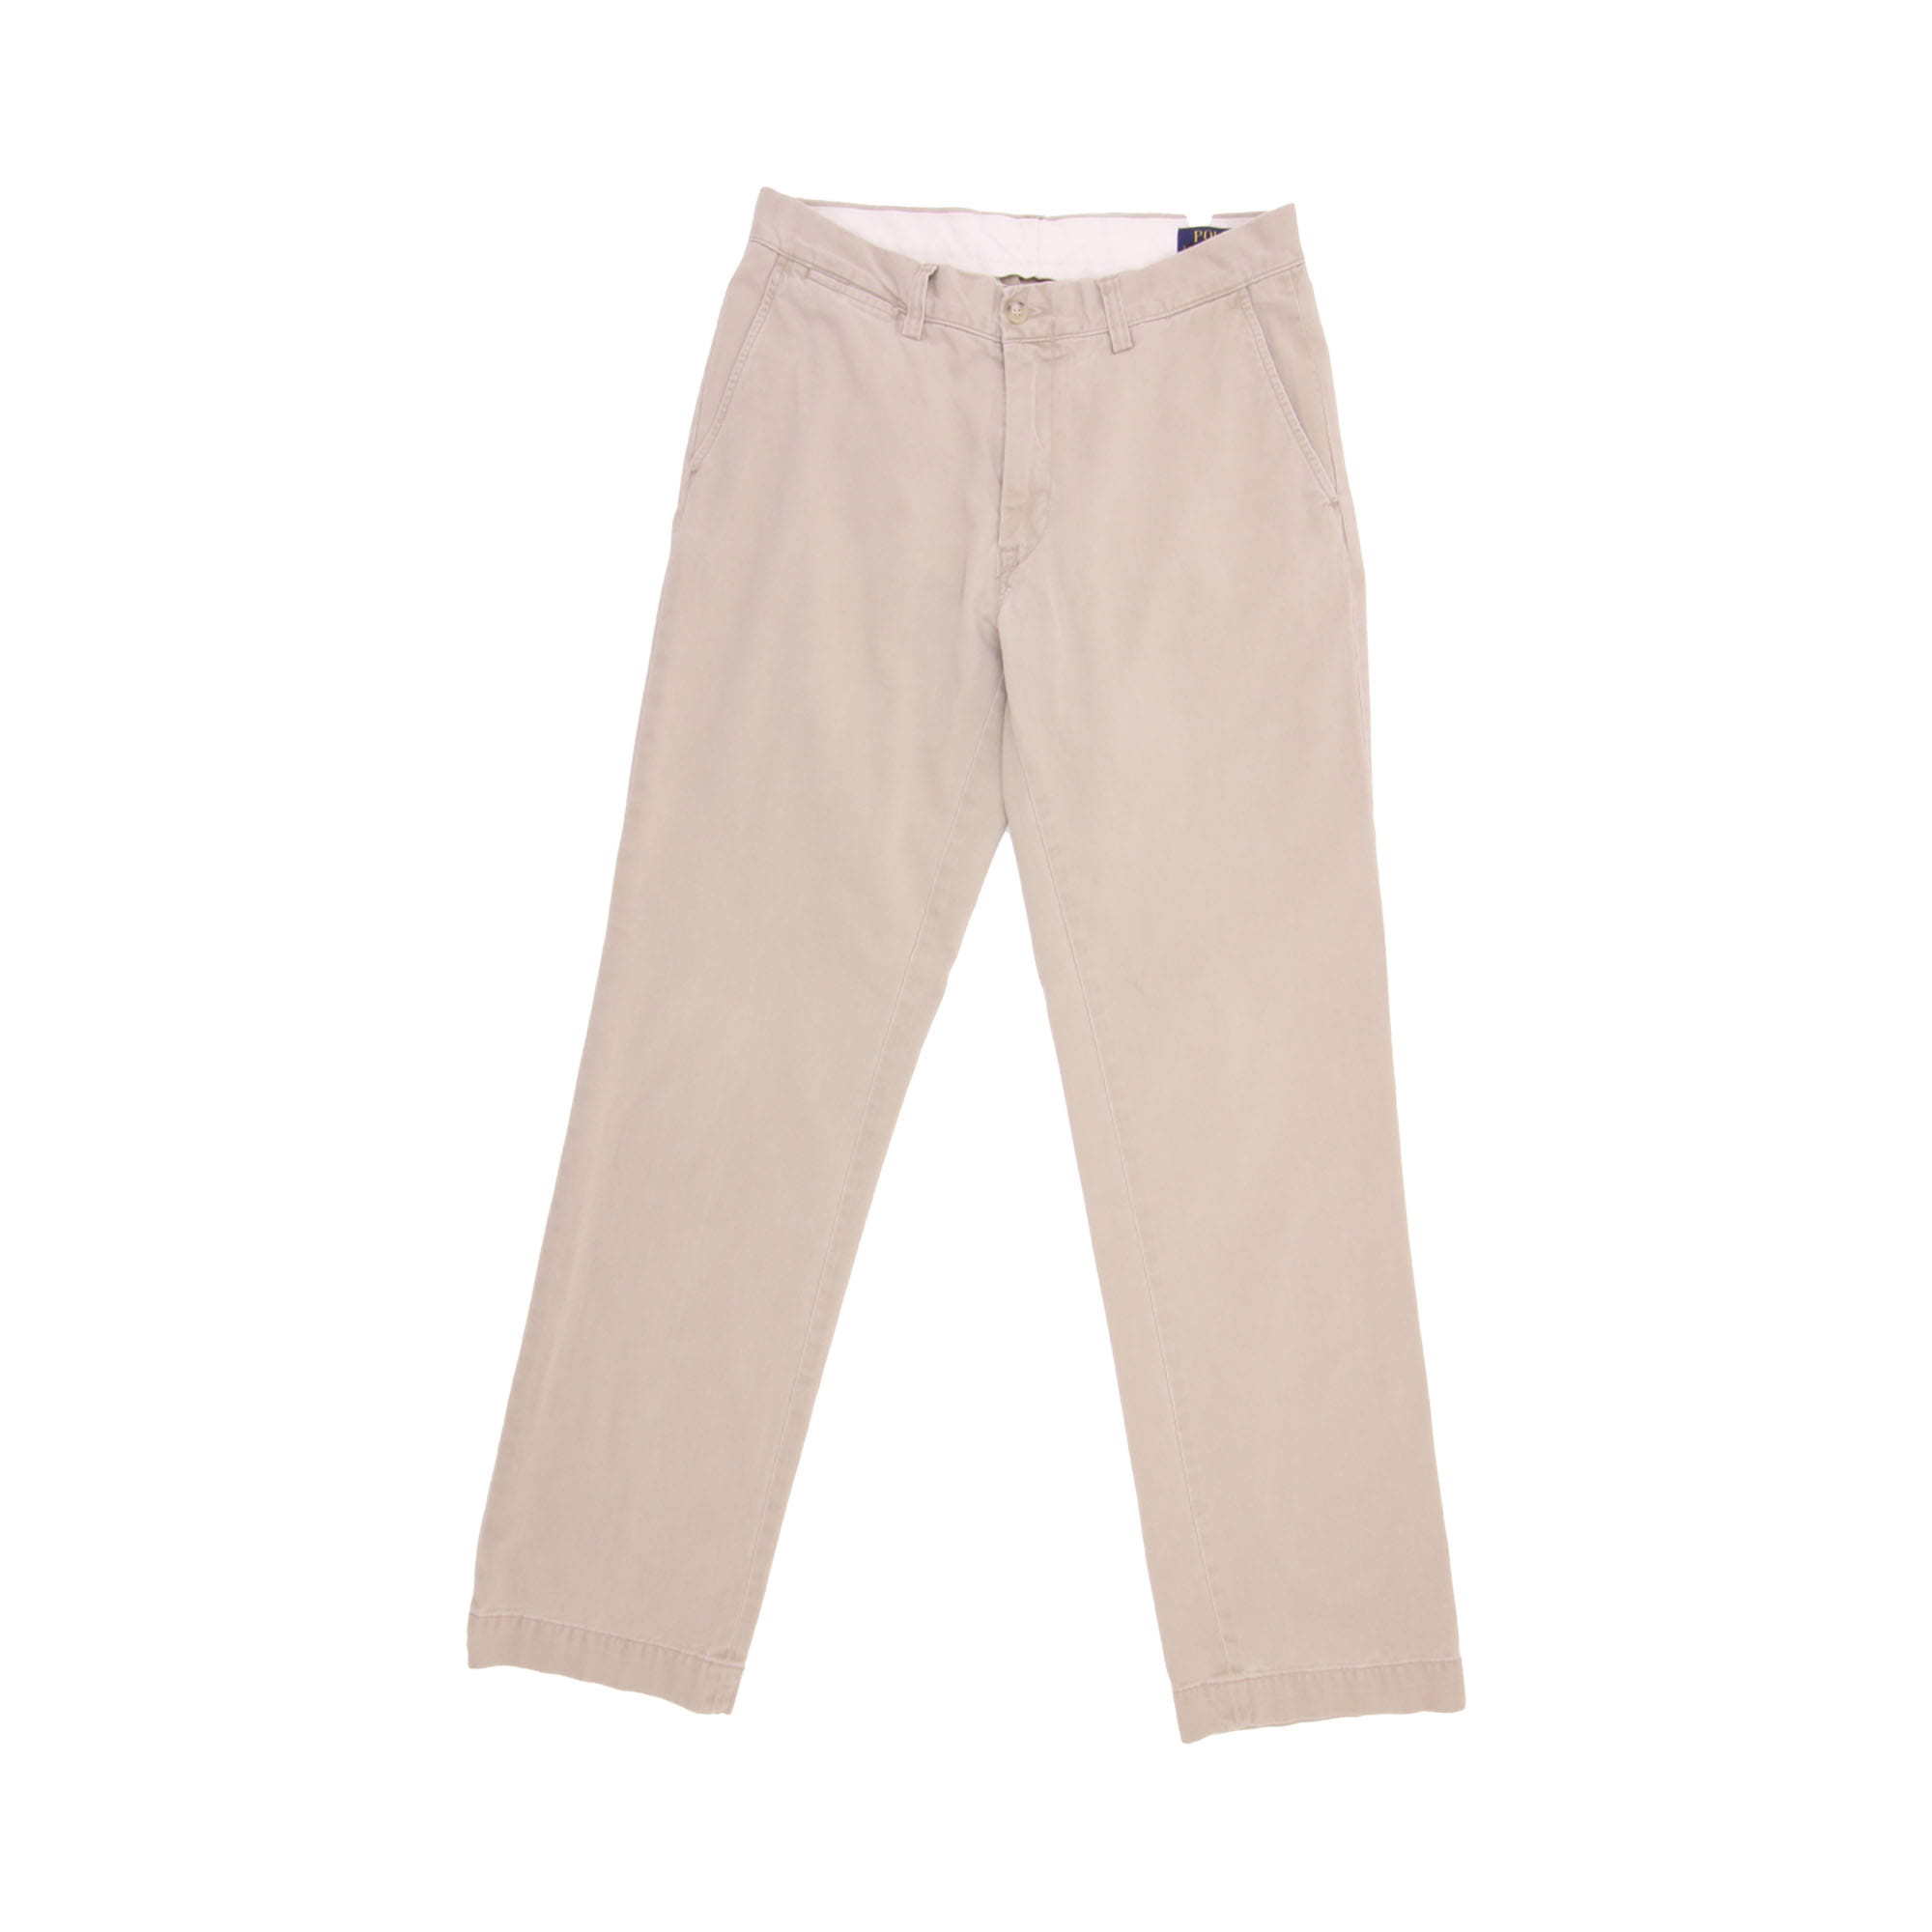 Polo Ralph Lauren Trousers Beige - W32 L34